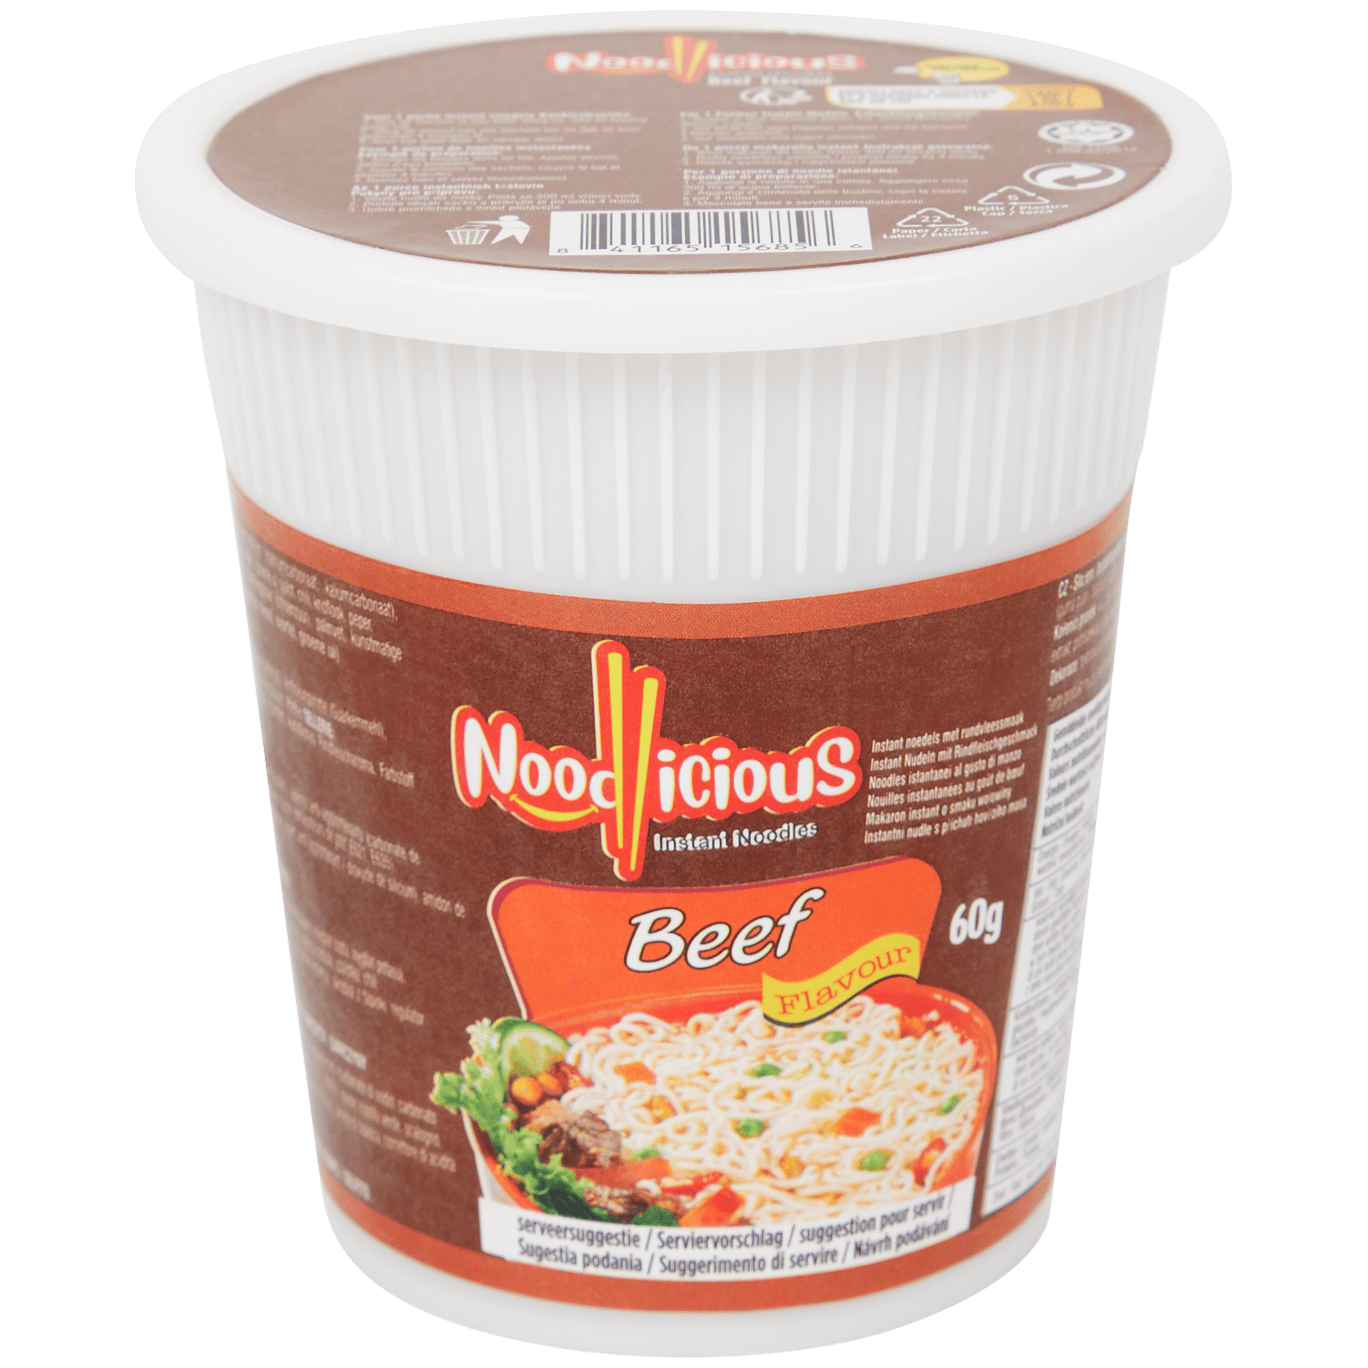 Noodles instantâneos Noodlicious